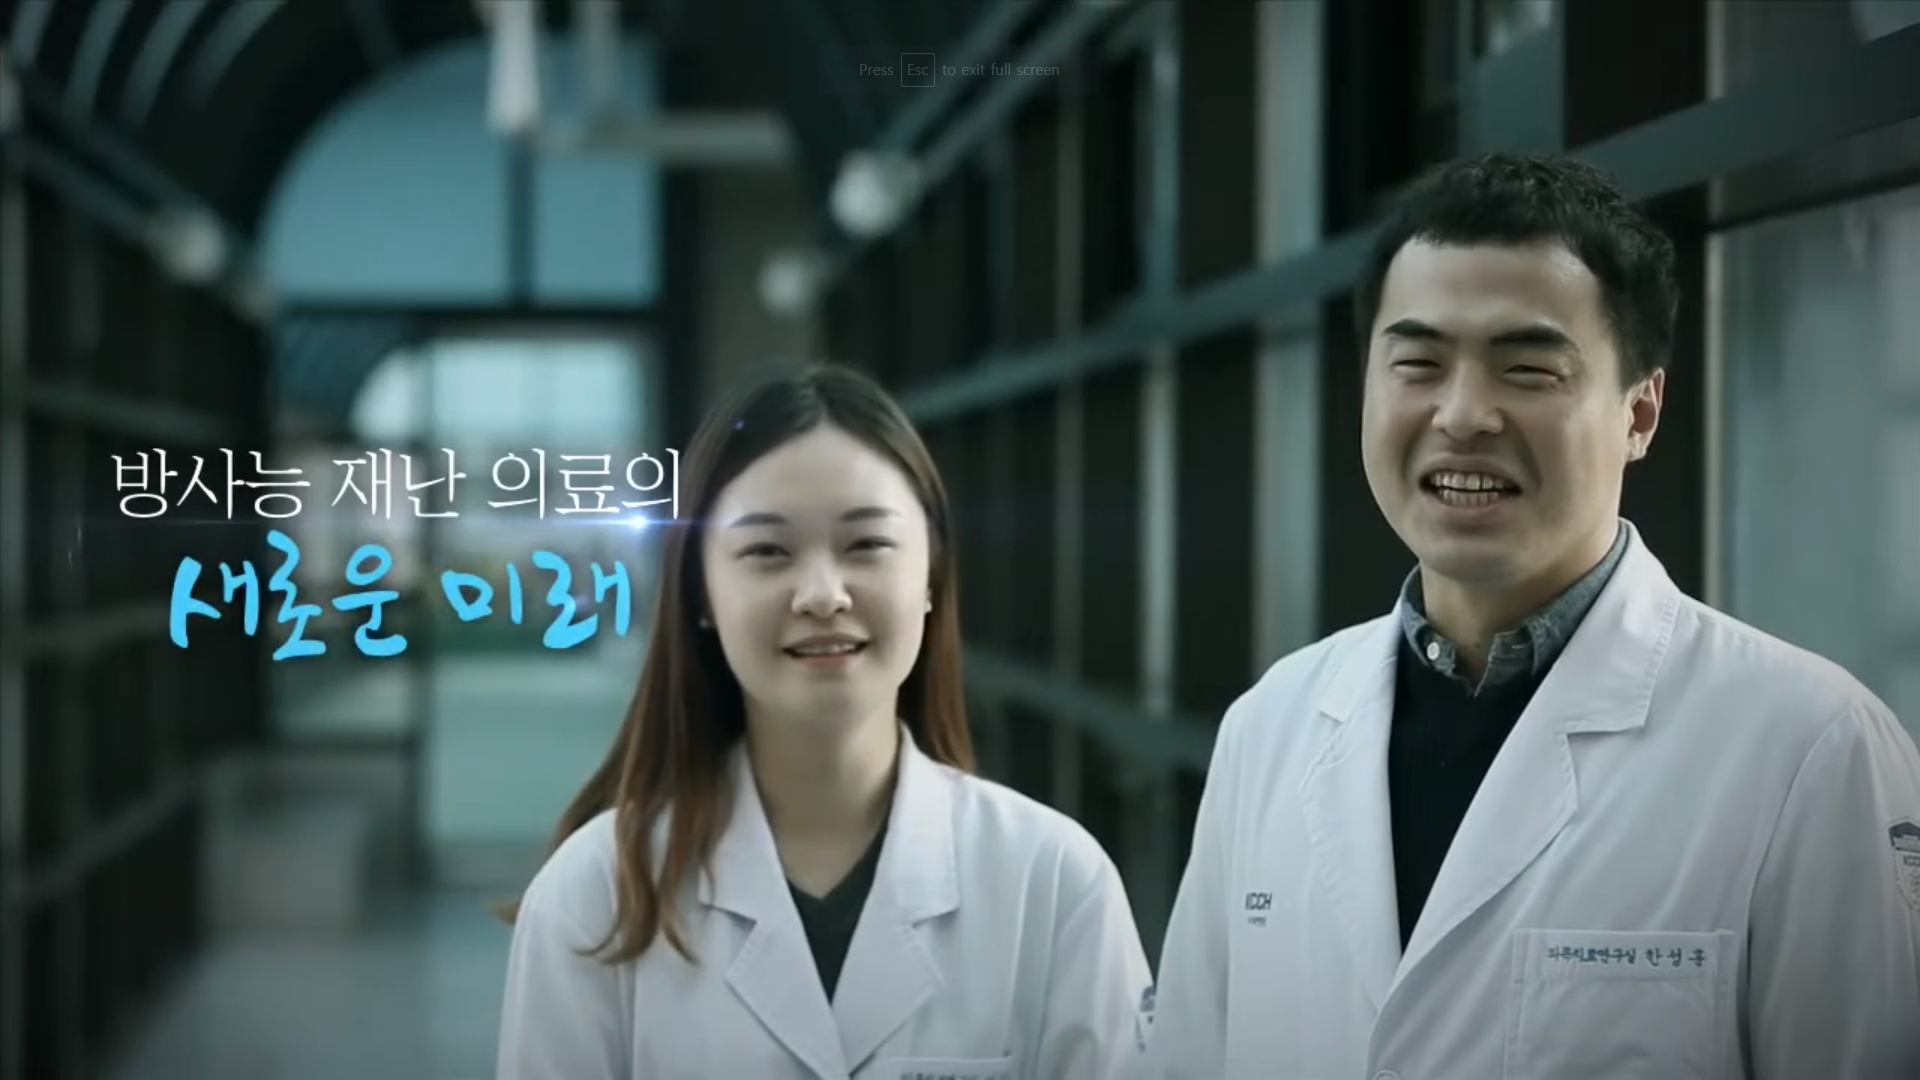 국가방사선비상진료센터 홍보영상(국문)